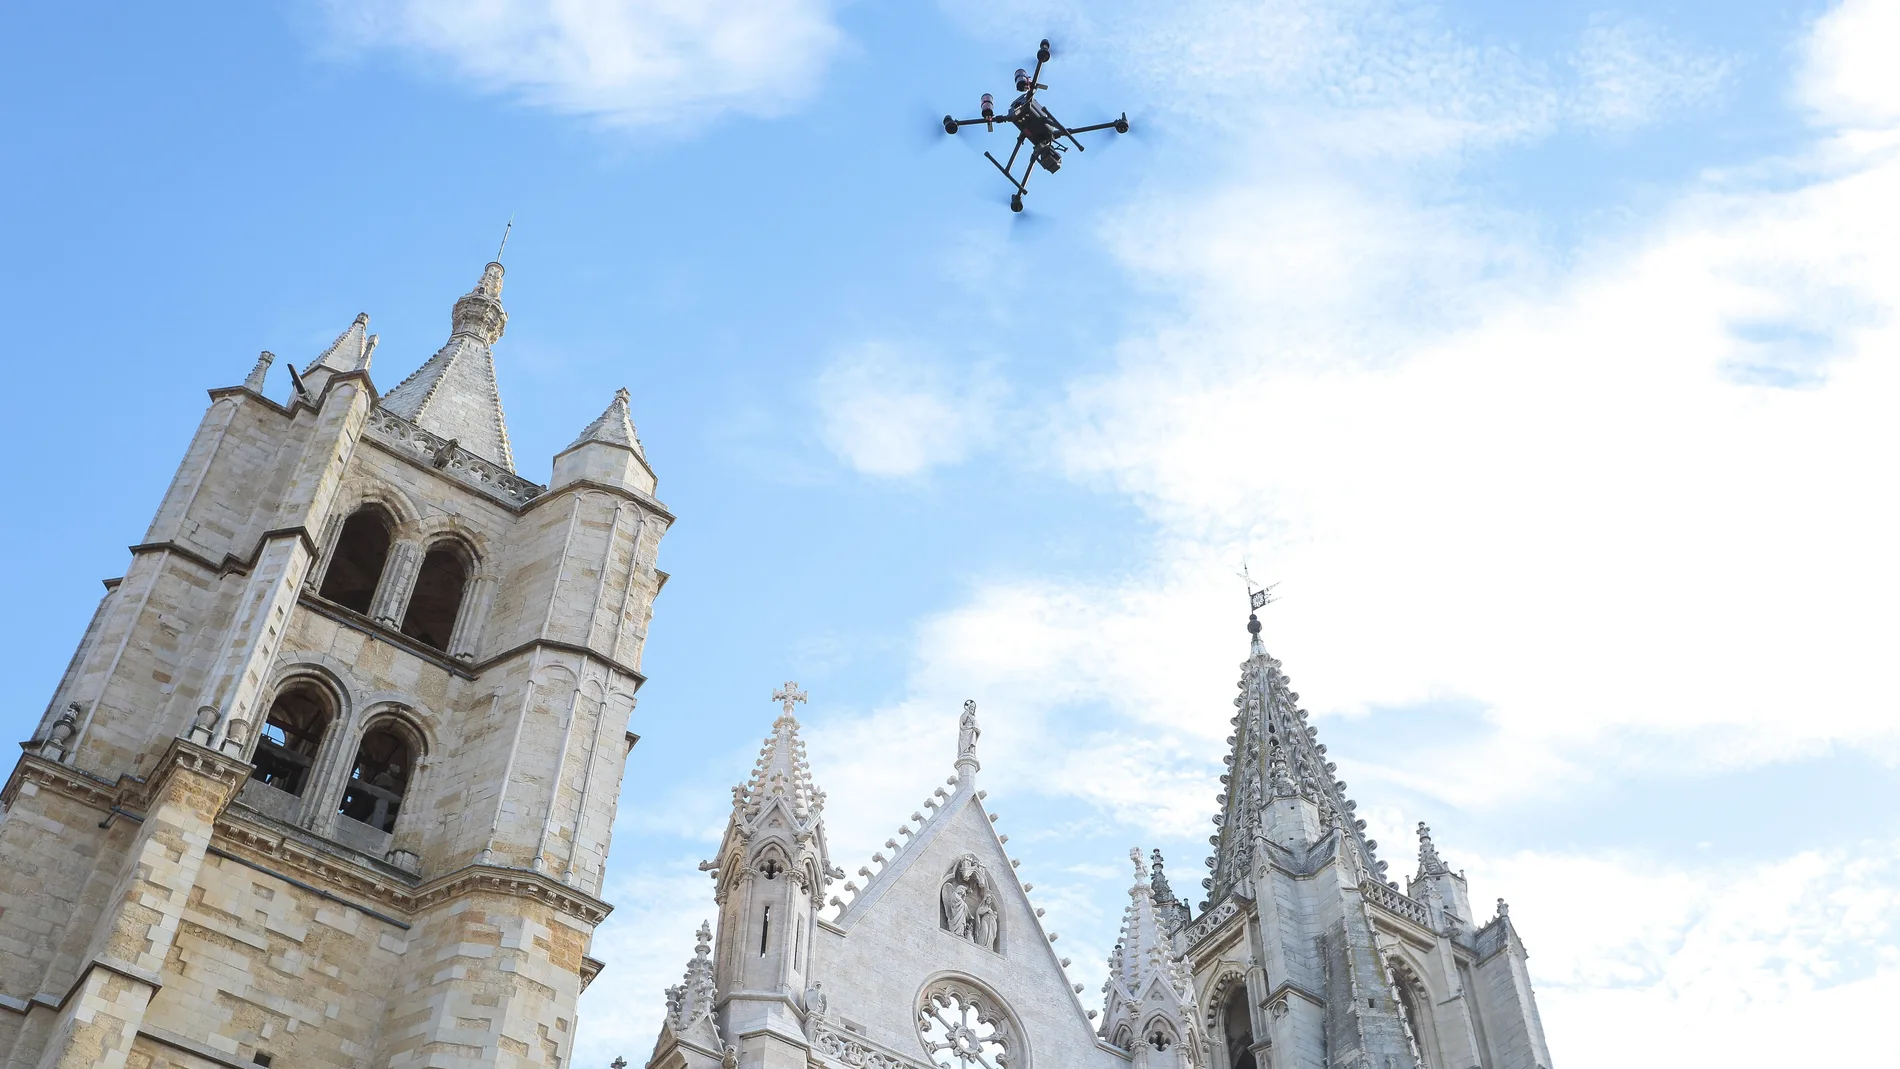 Tecnosylva inicia los vuelos con dron para preparar una reconstrucción en 3D de la catedral de León